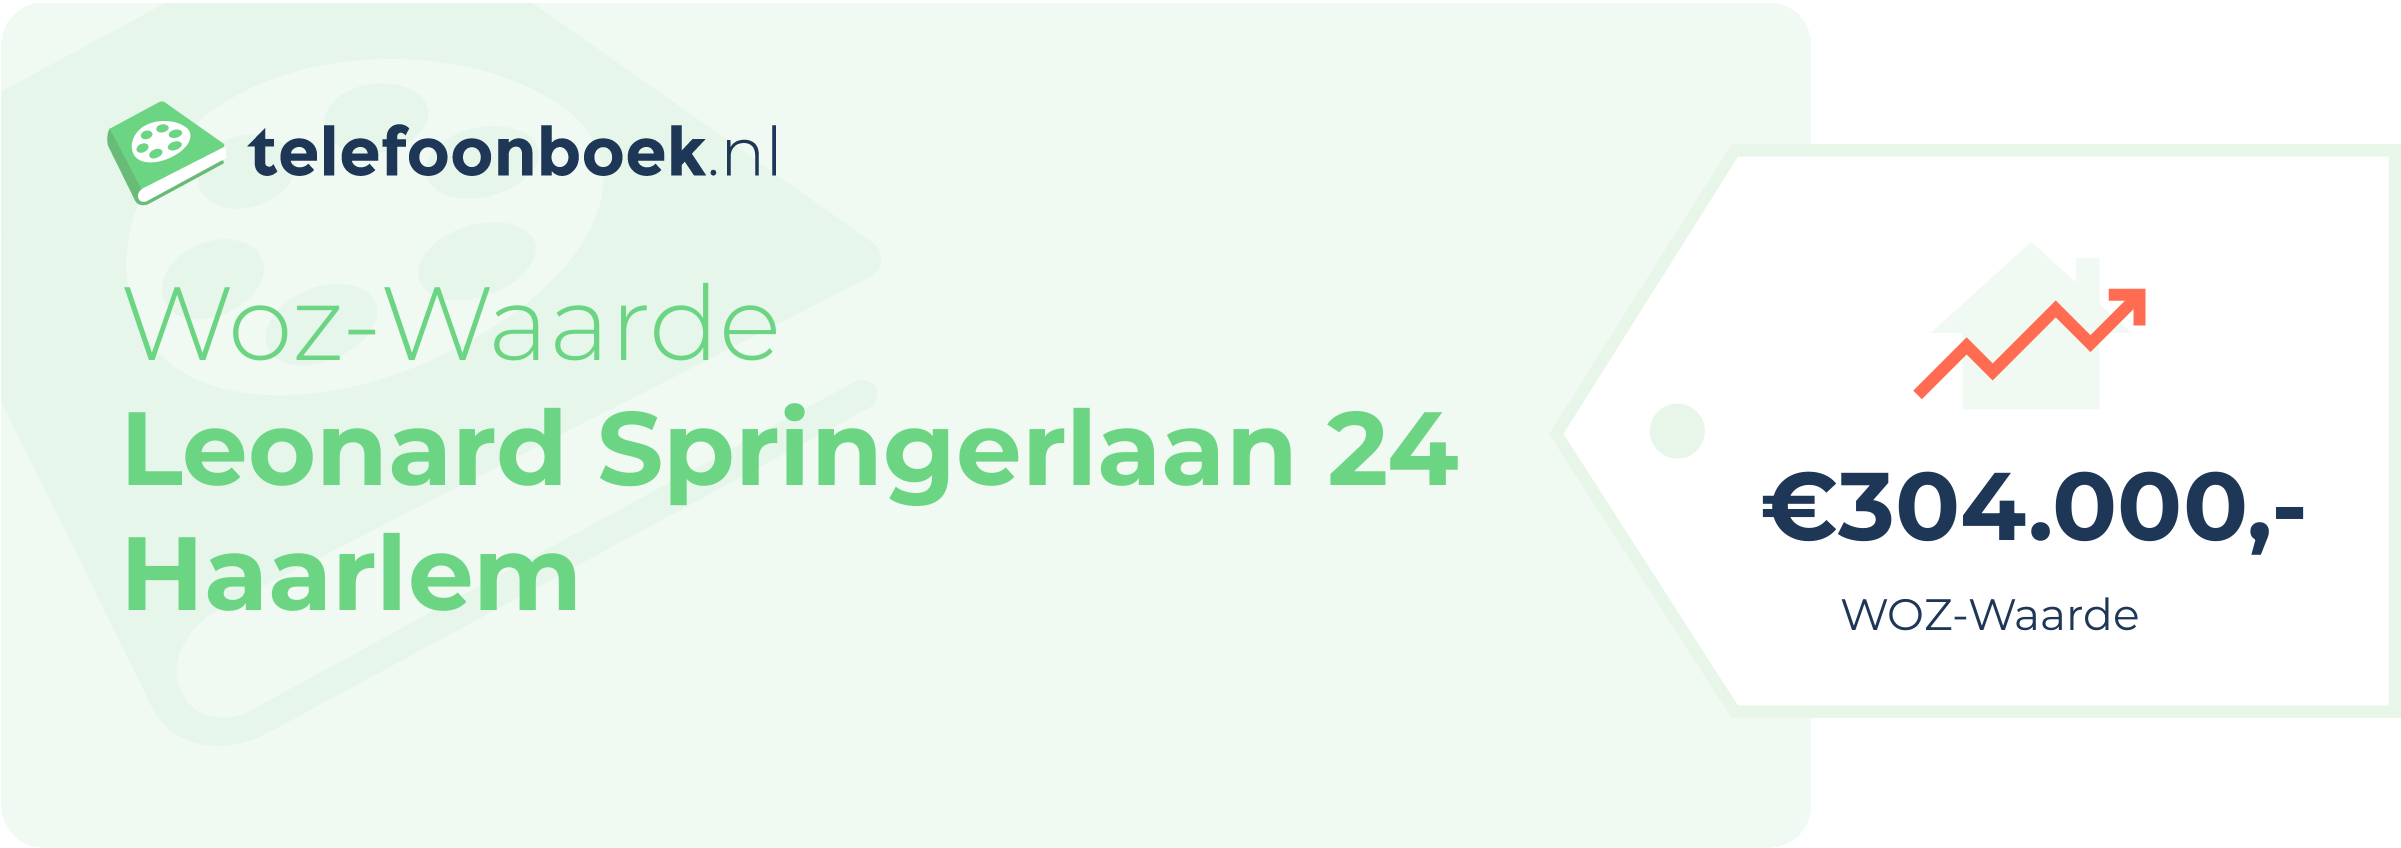 WOZ-waarde Leonard Springerlaan 24 Haarlem